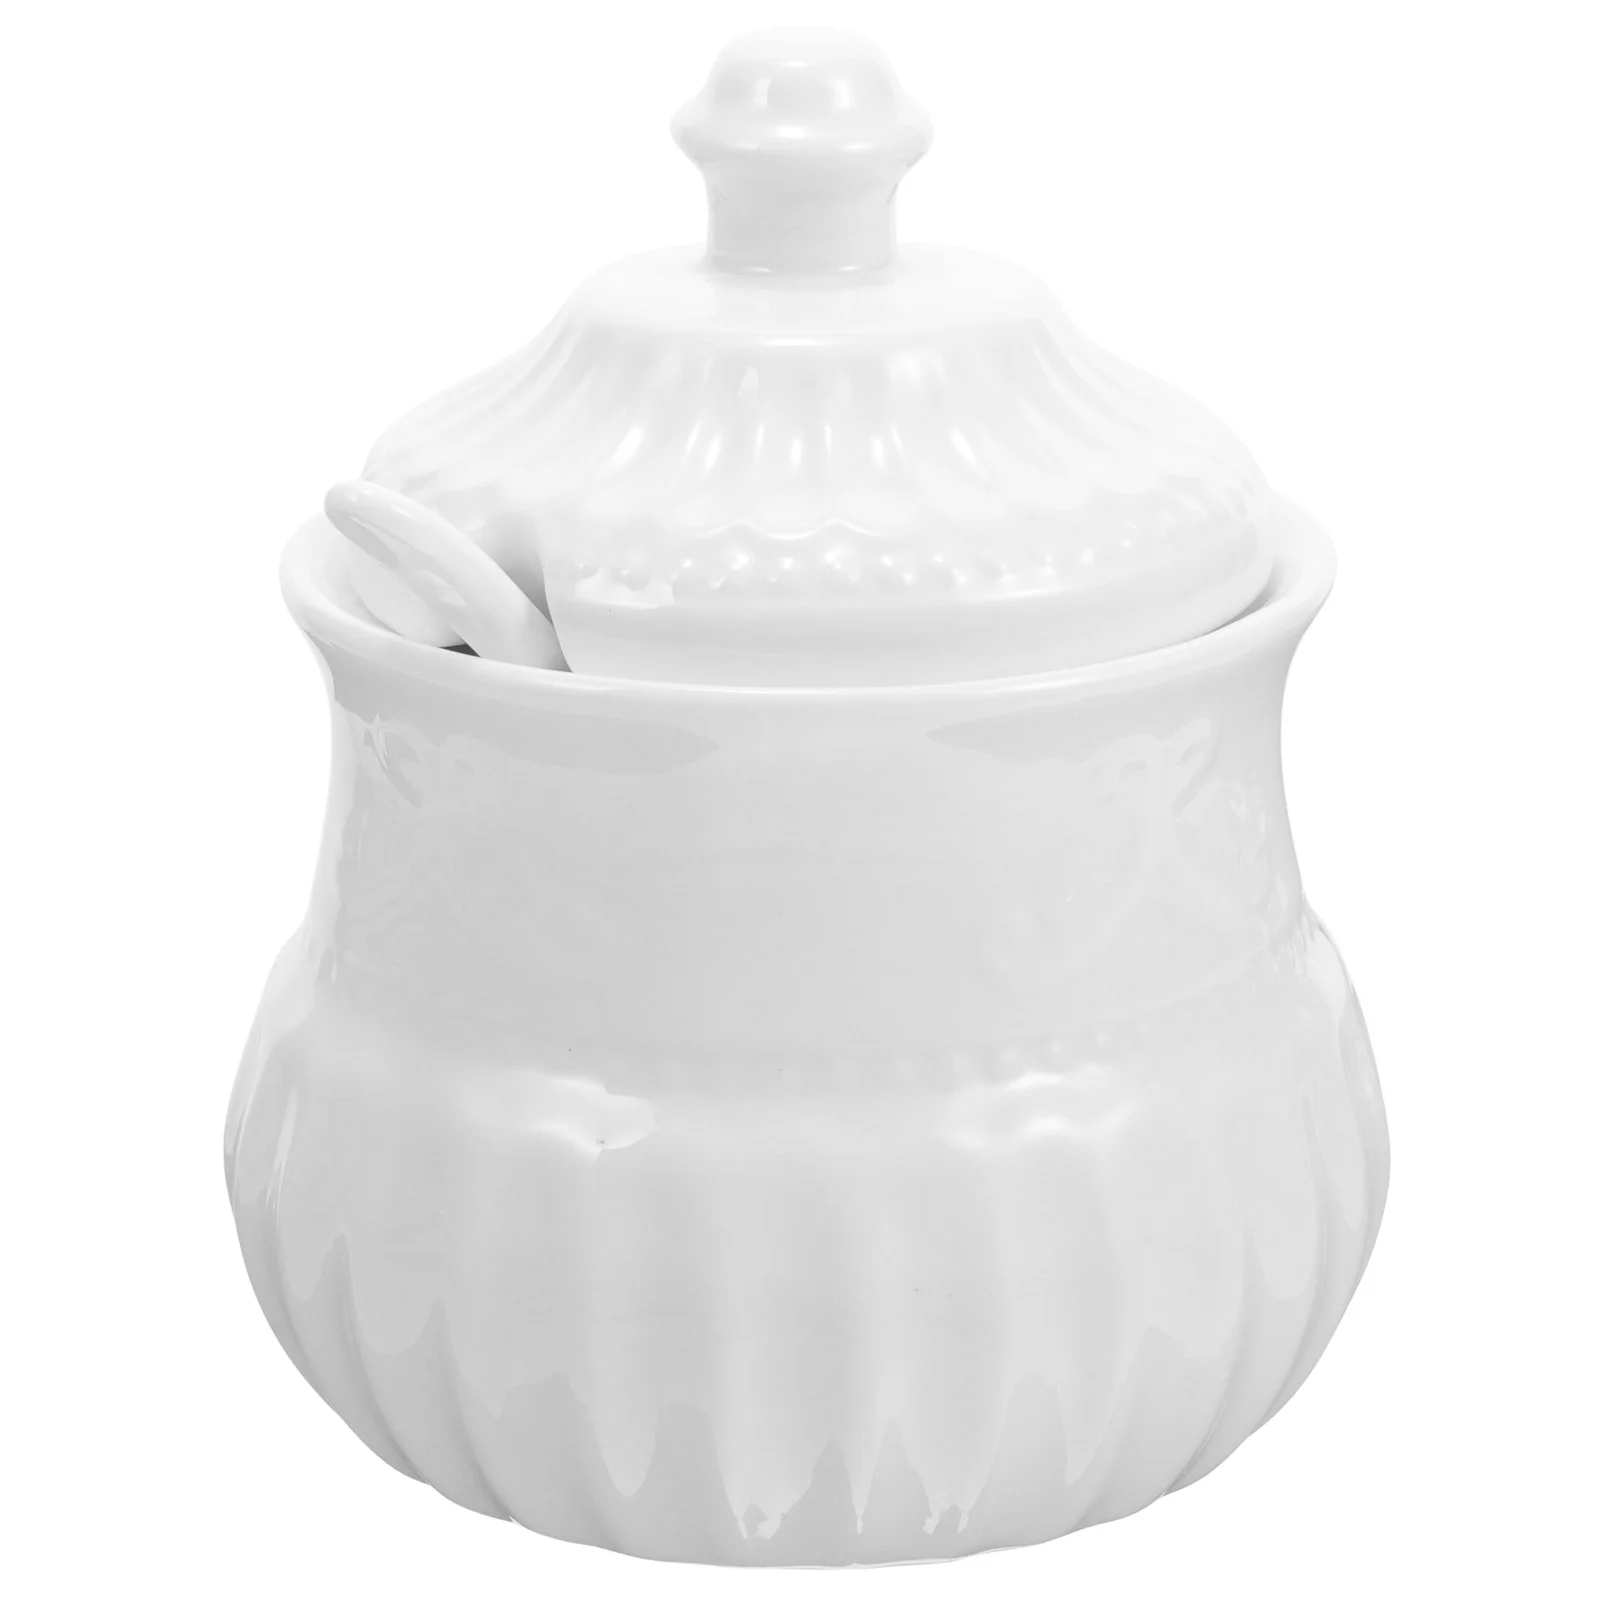 

Household Condiment Jar Seasoning Jars European Style Sugar Container Canister Ceramics Kitchen Essentials Storage Dispenser